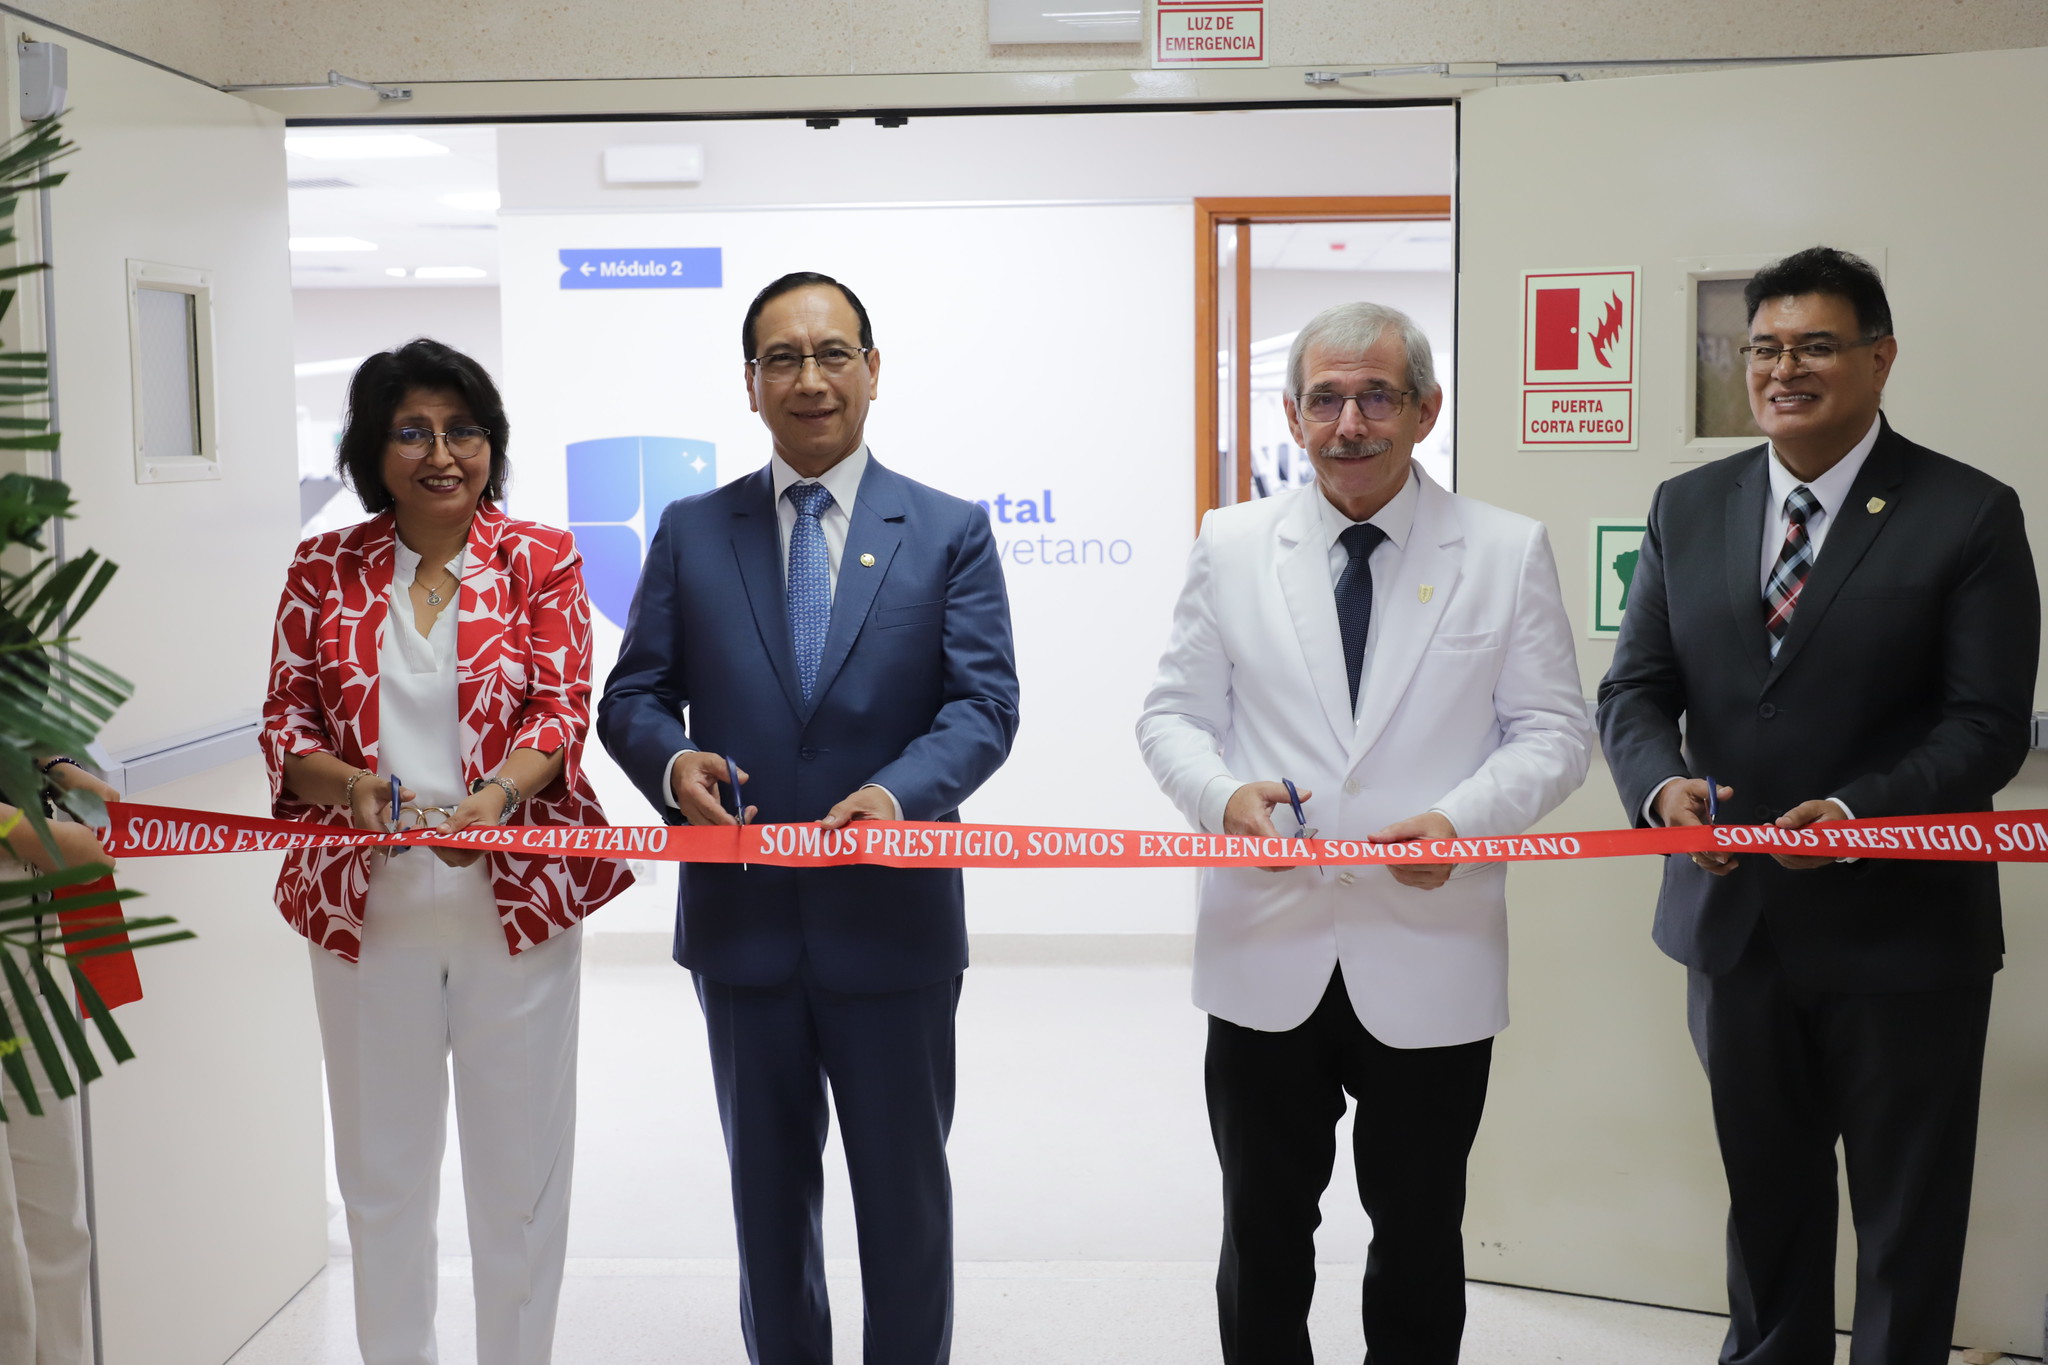 Centro Dental Docente inauguró nuevos módulos dentales en la sede CREO